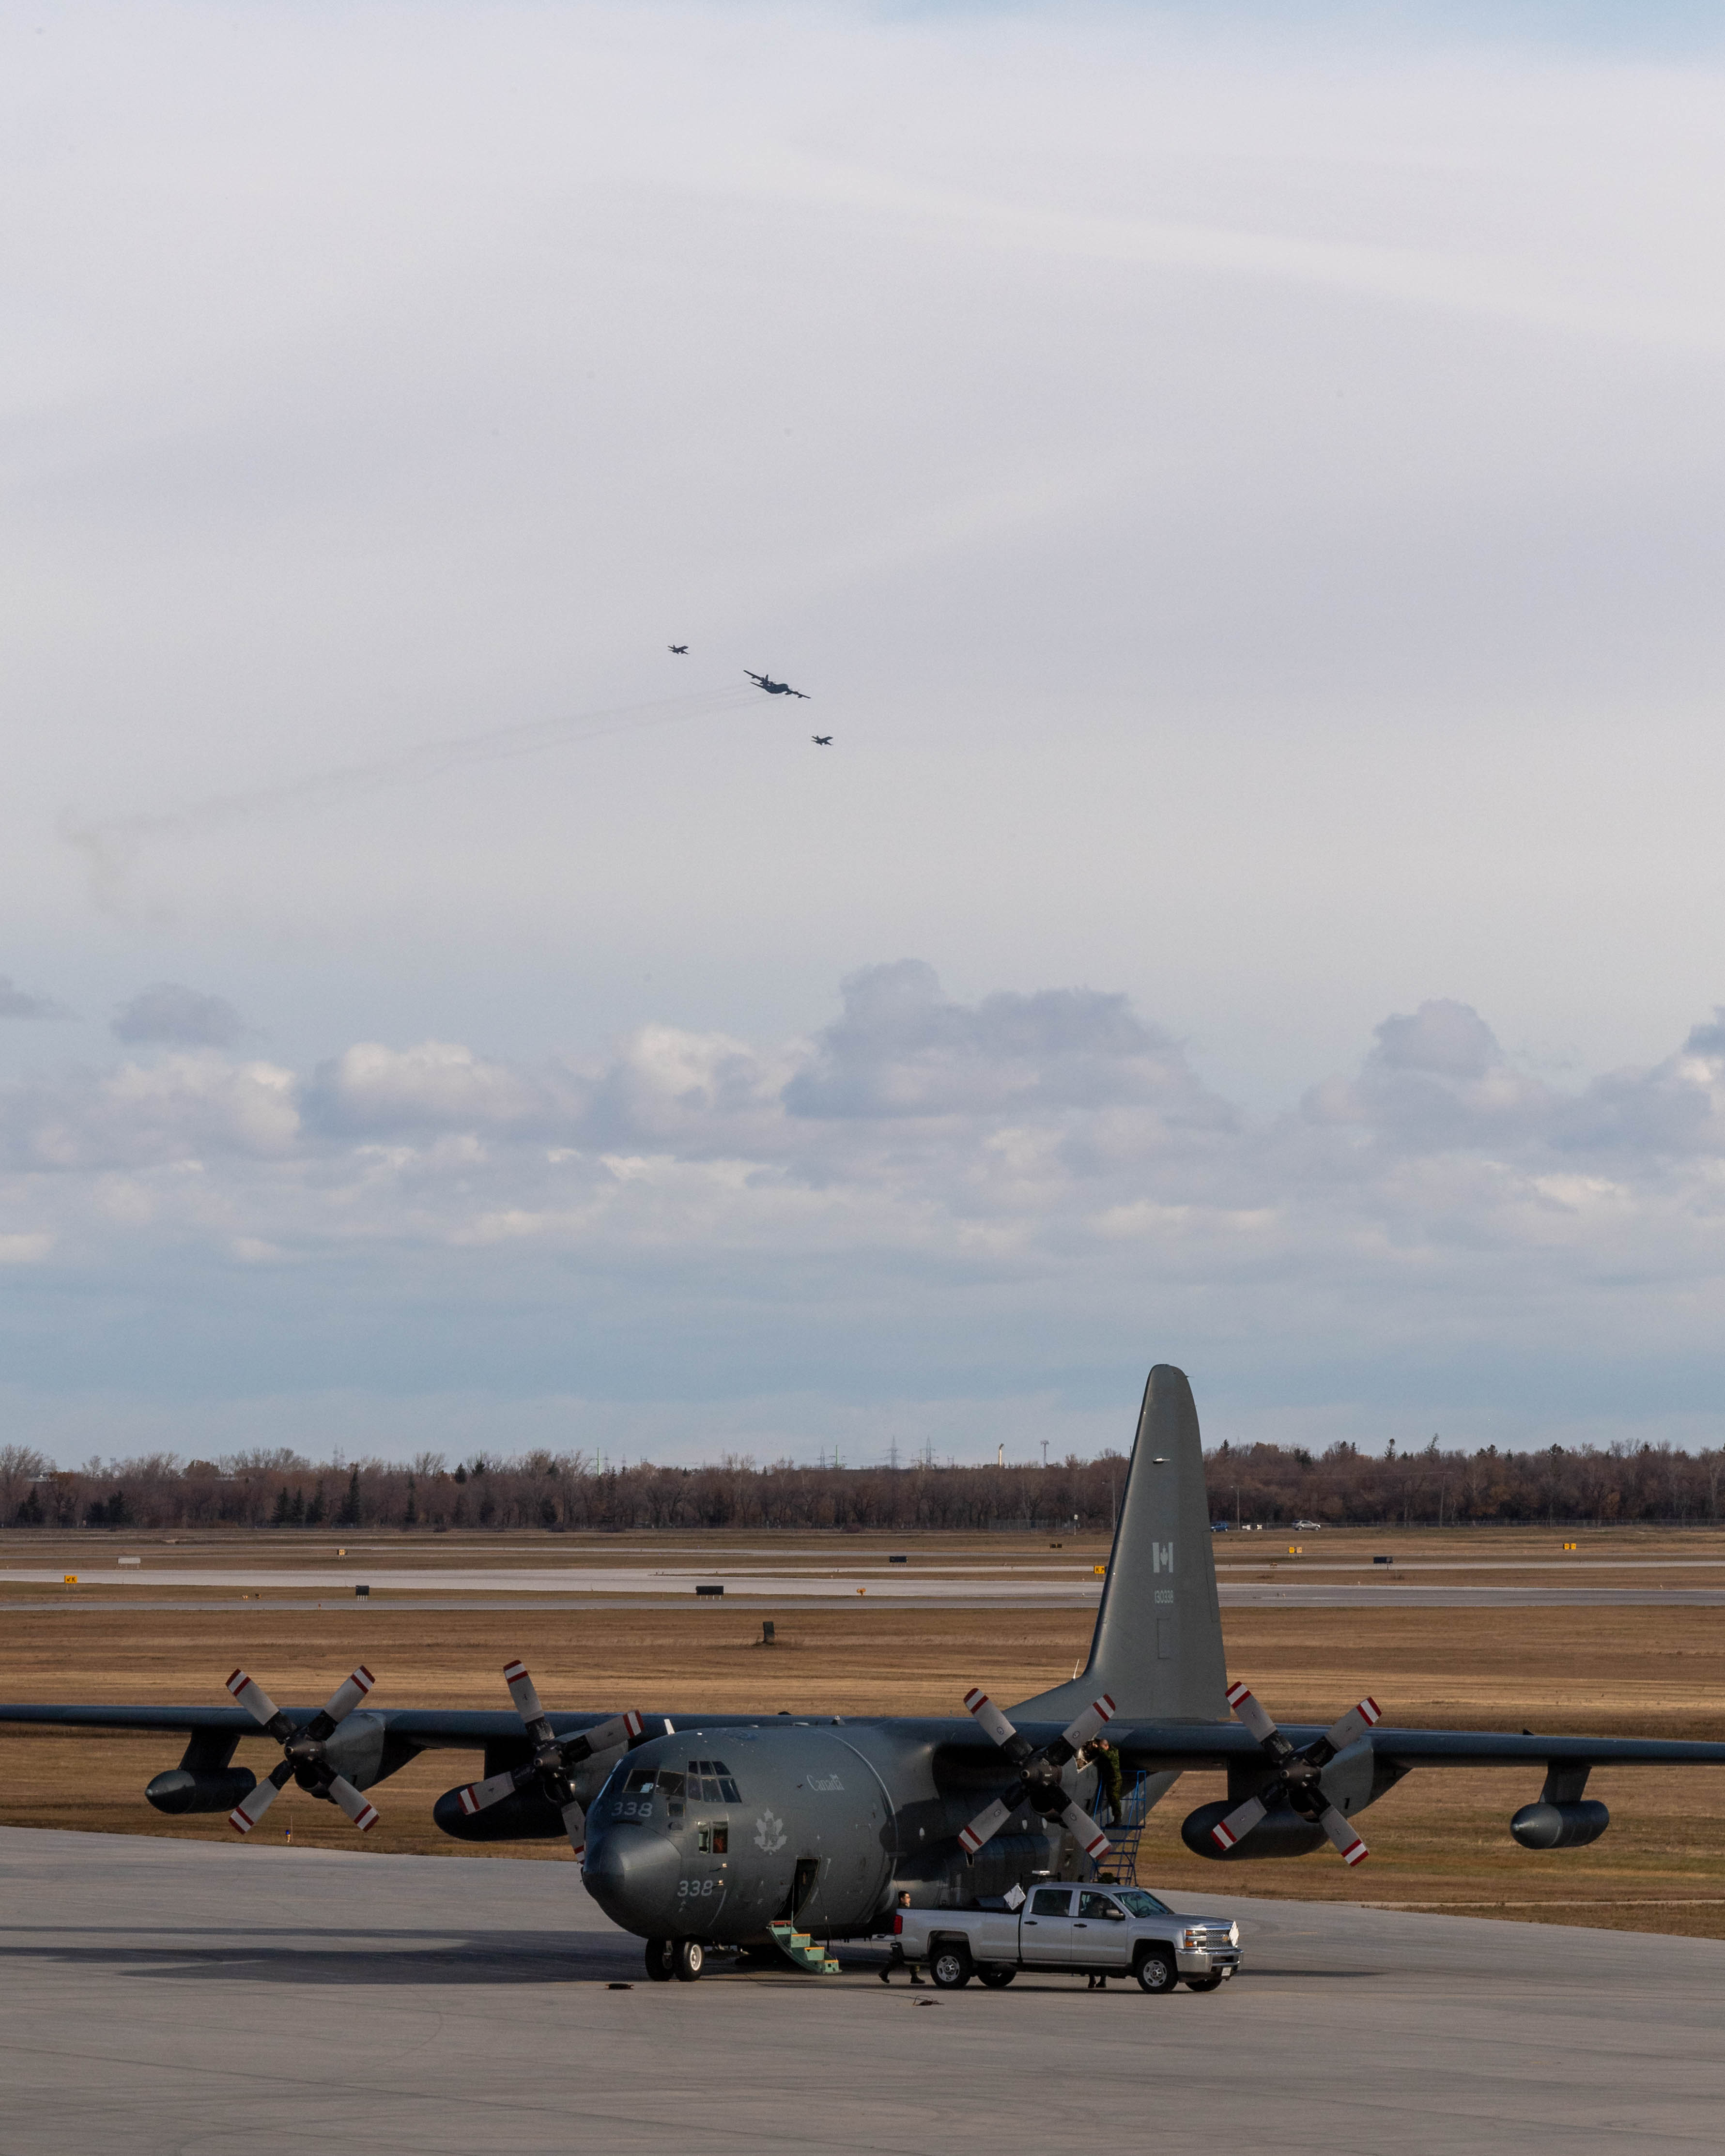 Un avion CC-130 Hercules se trouve sur la piste à la 17e Escadre Winnipeg, au Manitoba, le 13 octobre 2020, alors qu’un autre Hercules vole en formation avec deux chasseurs CF-188 Hornet afin de marquer la 60e année de service de l’aéronef dans l’Aviation royale canadienne. PHOTO : Caporal Darryl Hepner